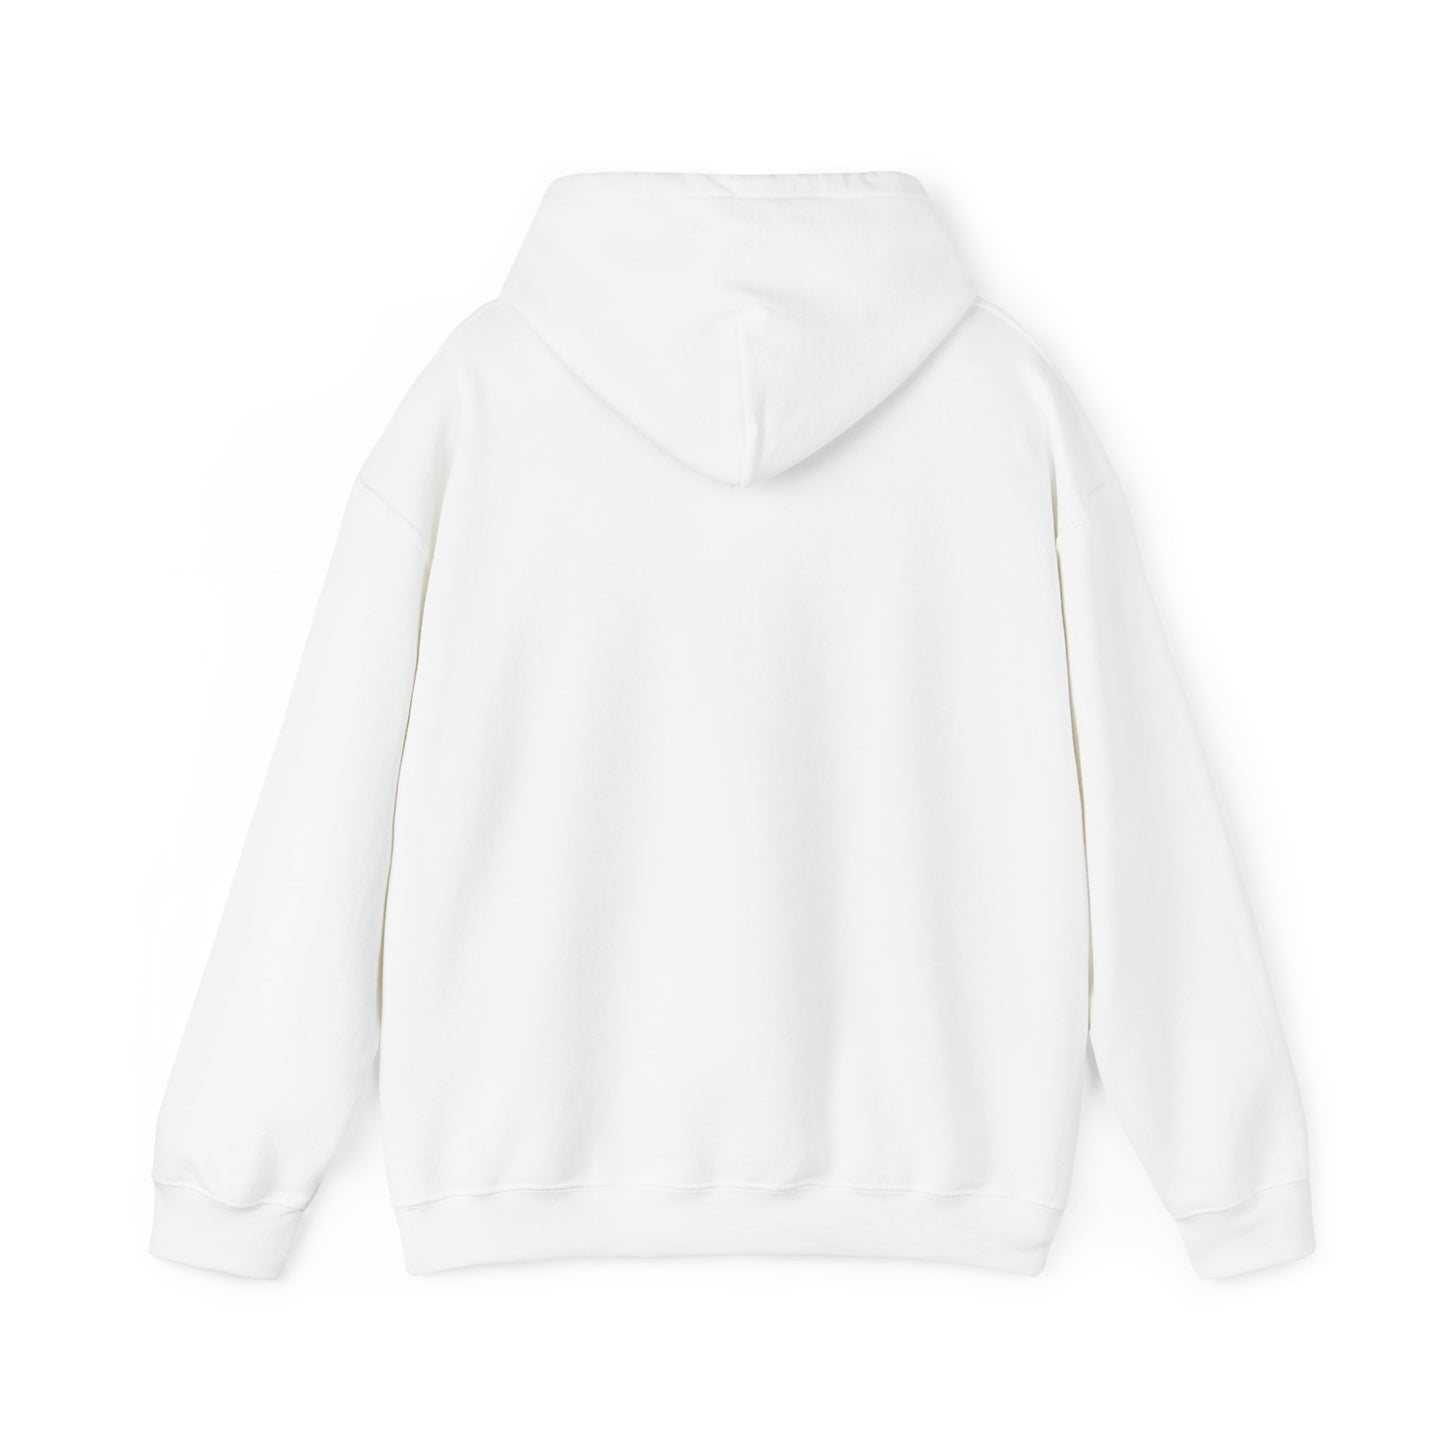 Worthy Worthy Worthy - Unisex Heavy Blend Hooded Sweatshirt